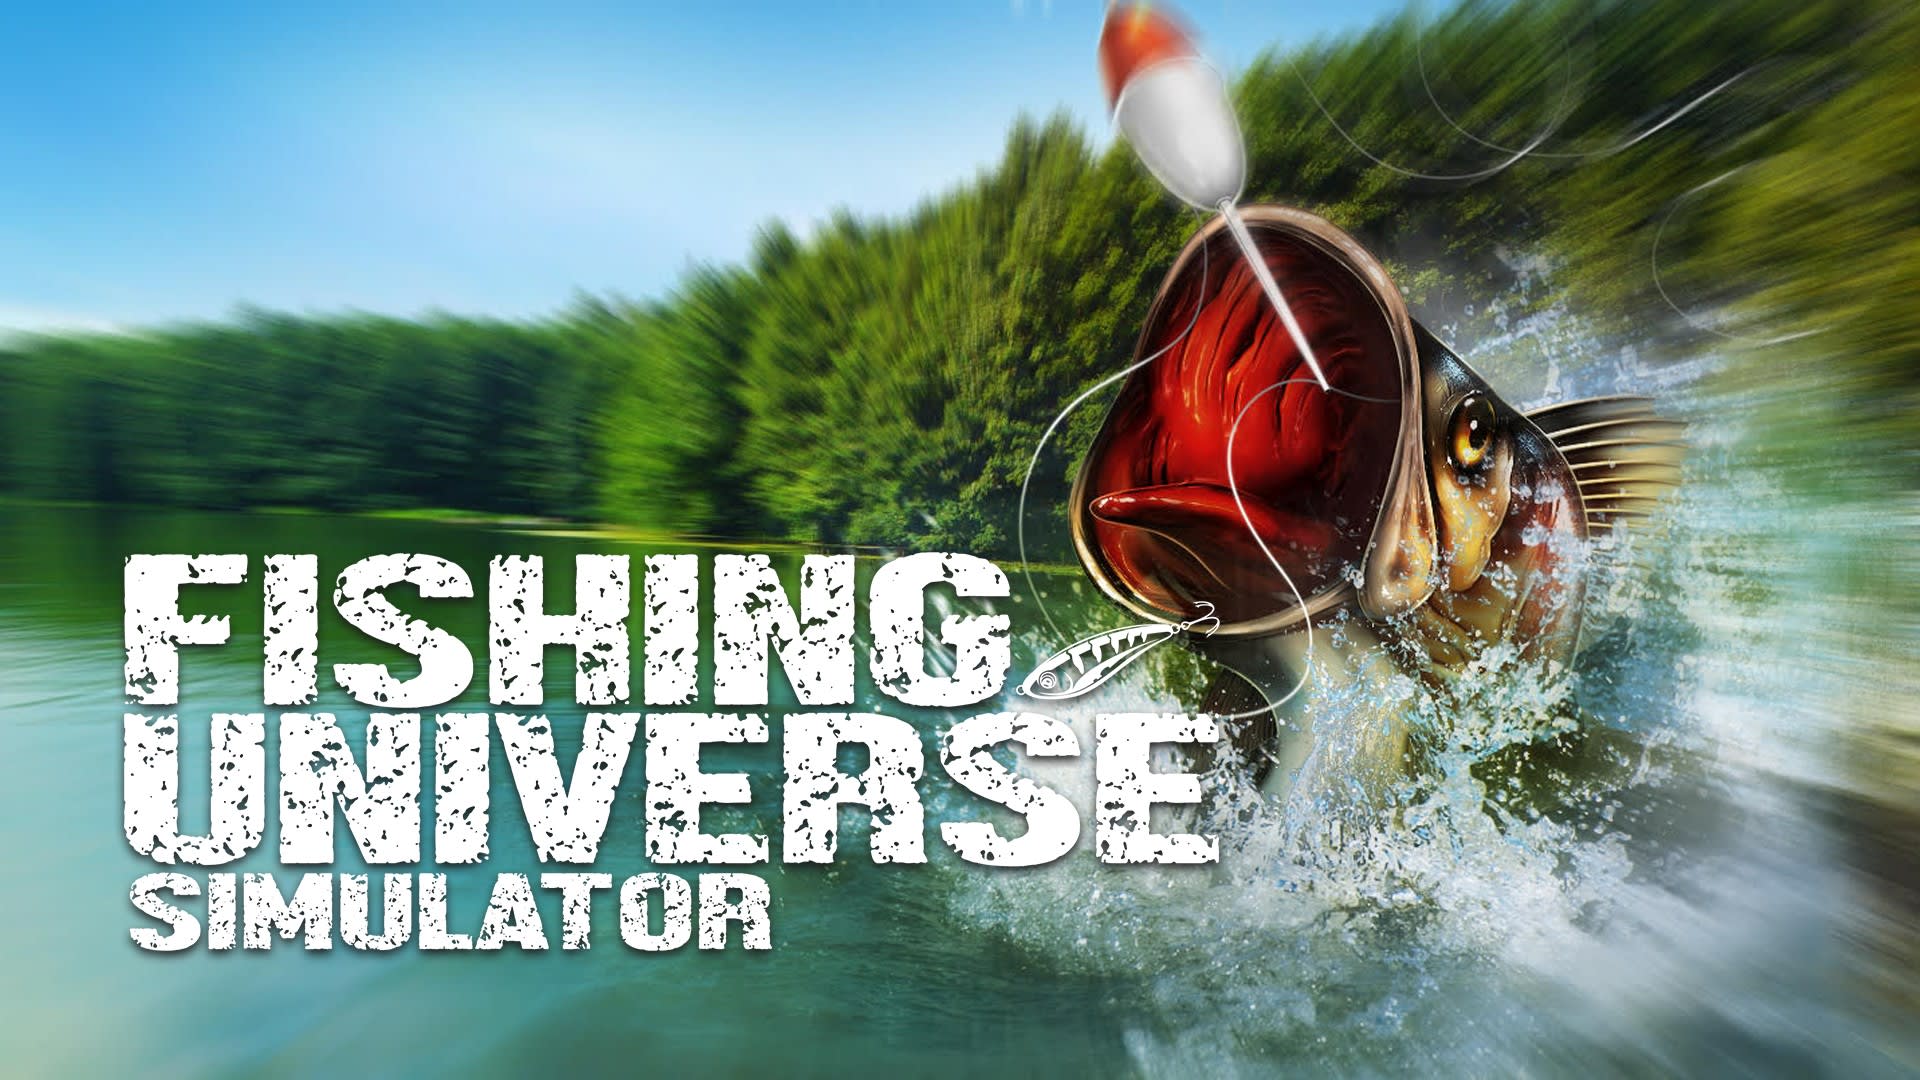 全新) Switch Fishing Star World Tour + Reel Fishing Rod 釣魚桿(美